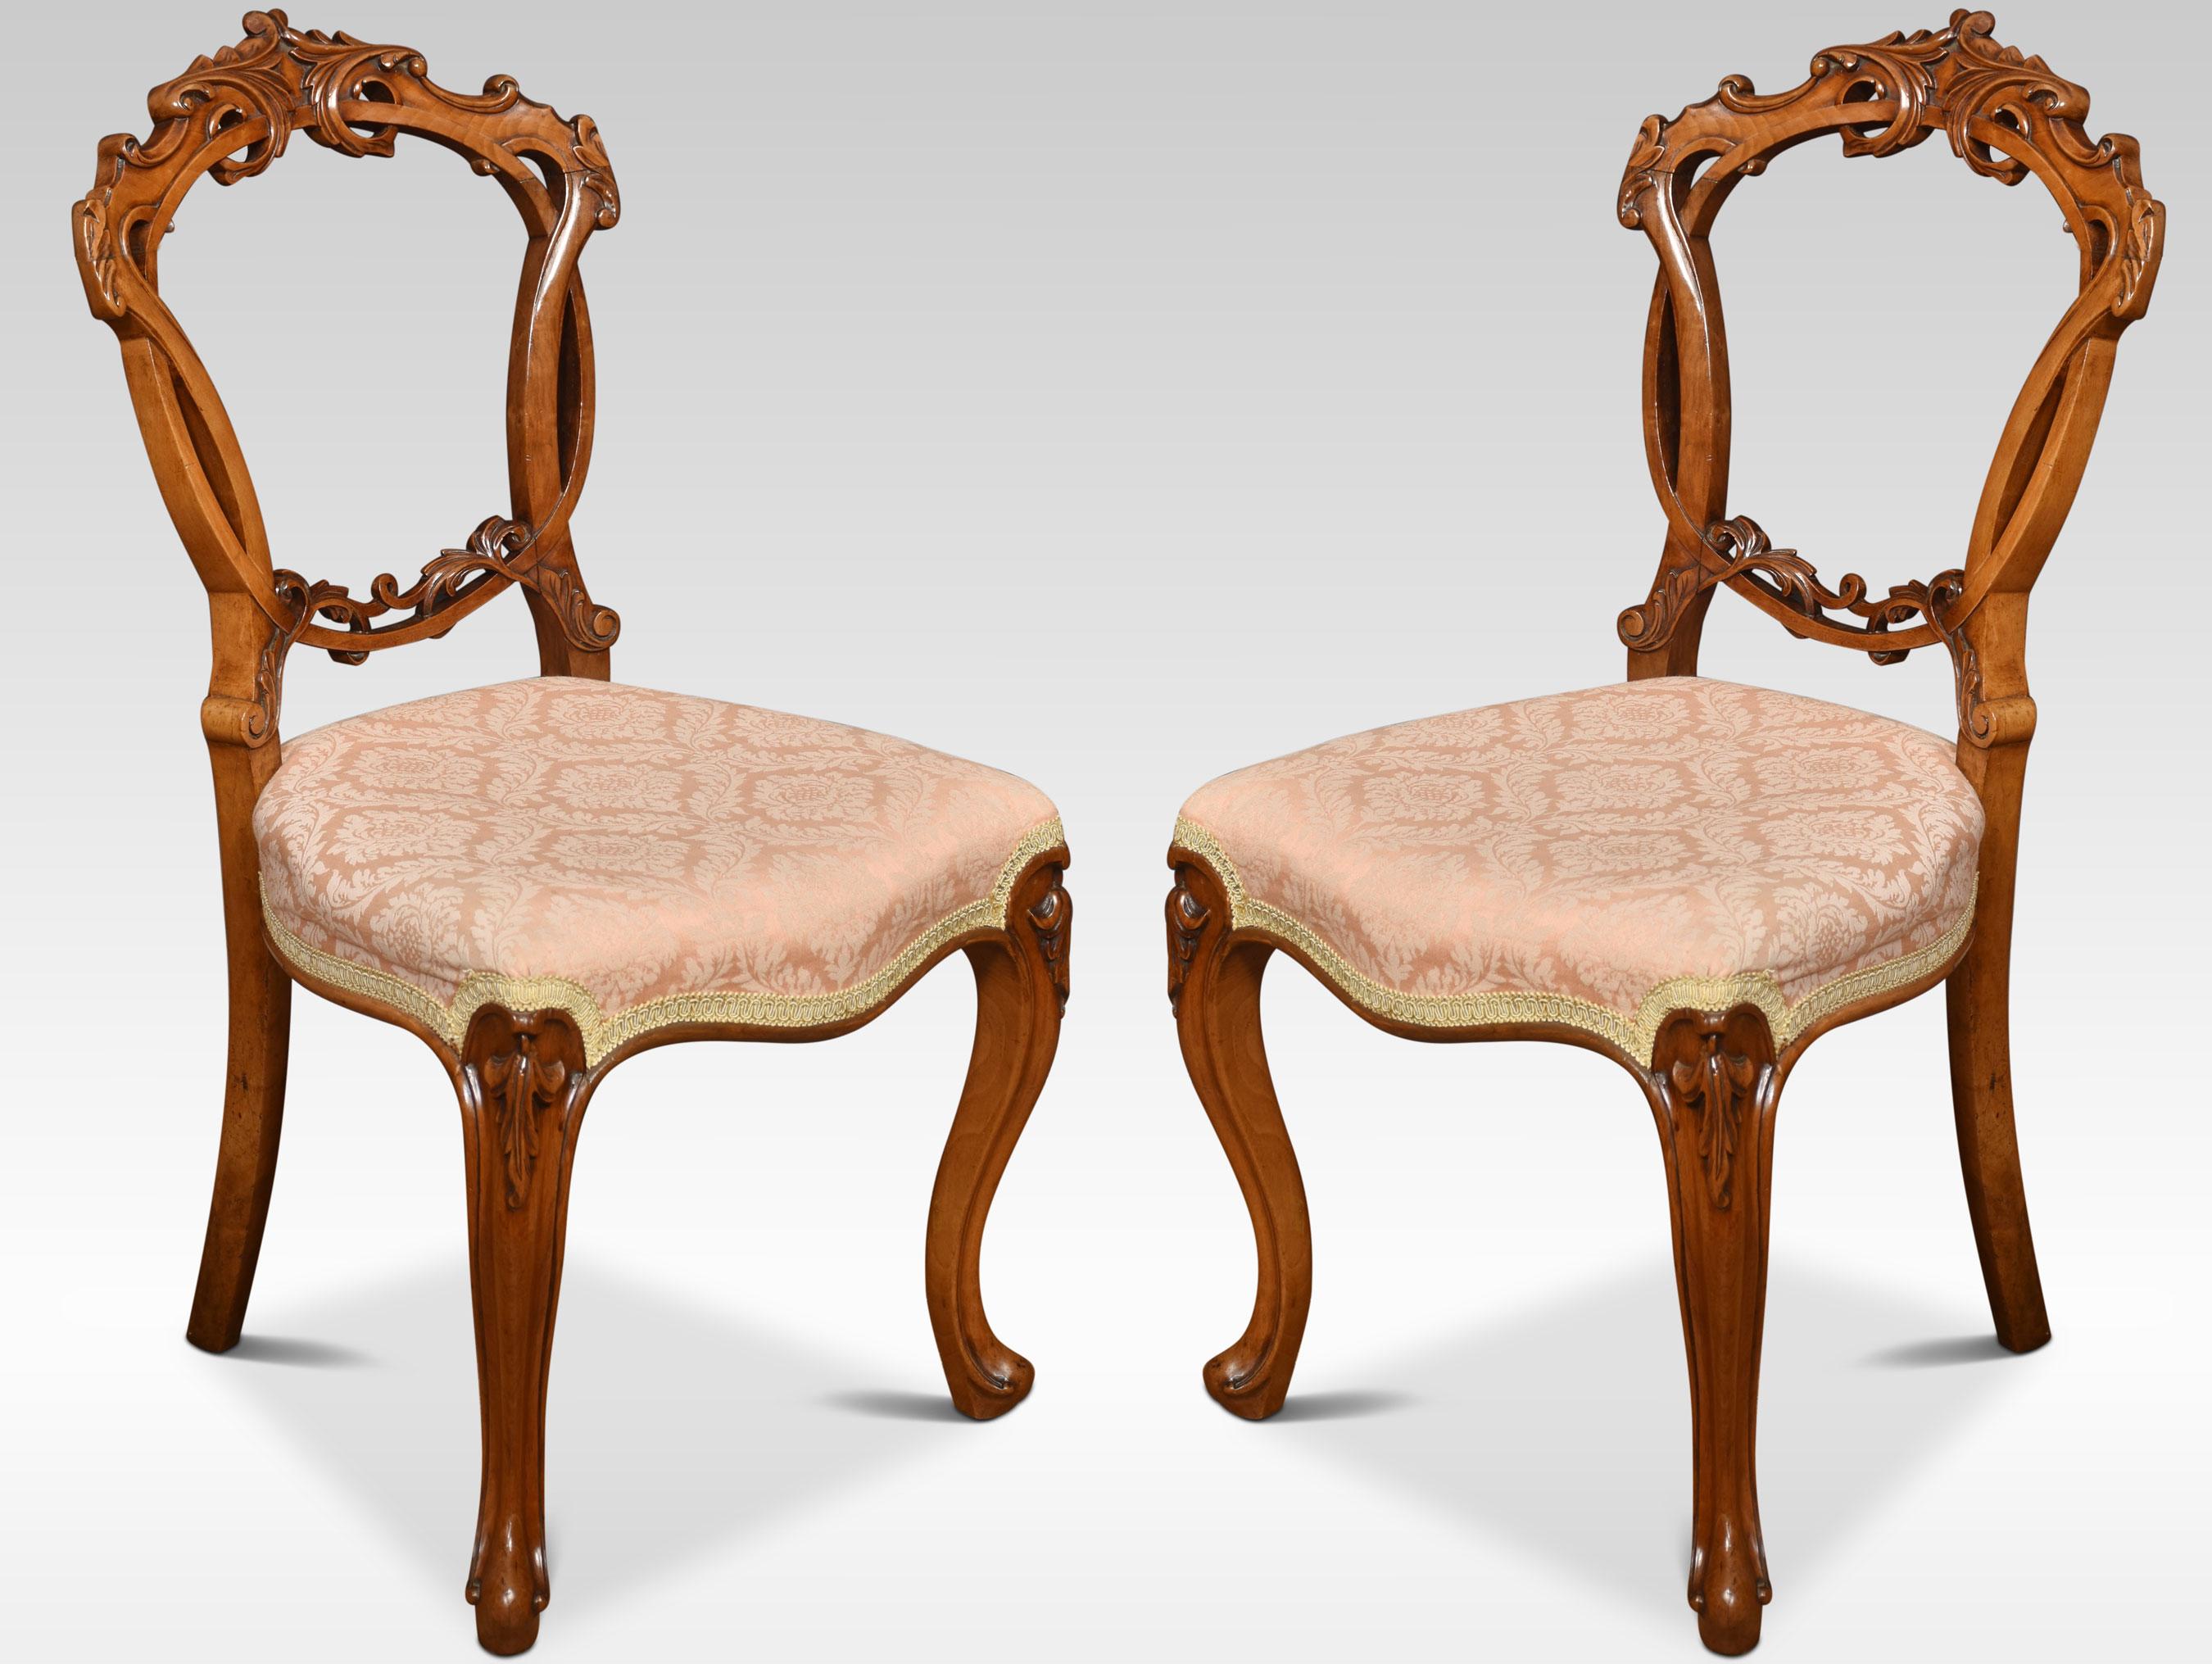 Satz von vier Esszimmerstühlen mit Ballonrücken aus Nussbaumholz, jeder Stuhl mit einer durchbrochenen Ringrückenlehne, die mit geschnitzten Blattwerken verflochten ist, über dem gepolsterten Serpentinensitz, der auf Cabriole-Vorderbeinen